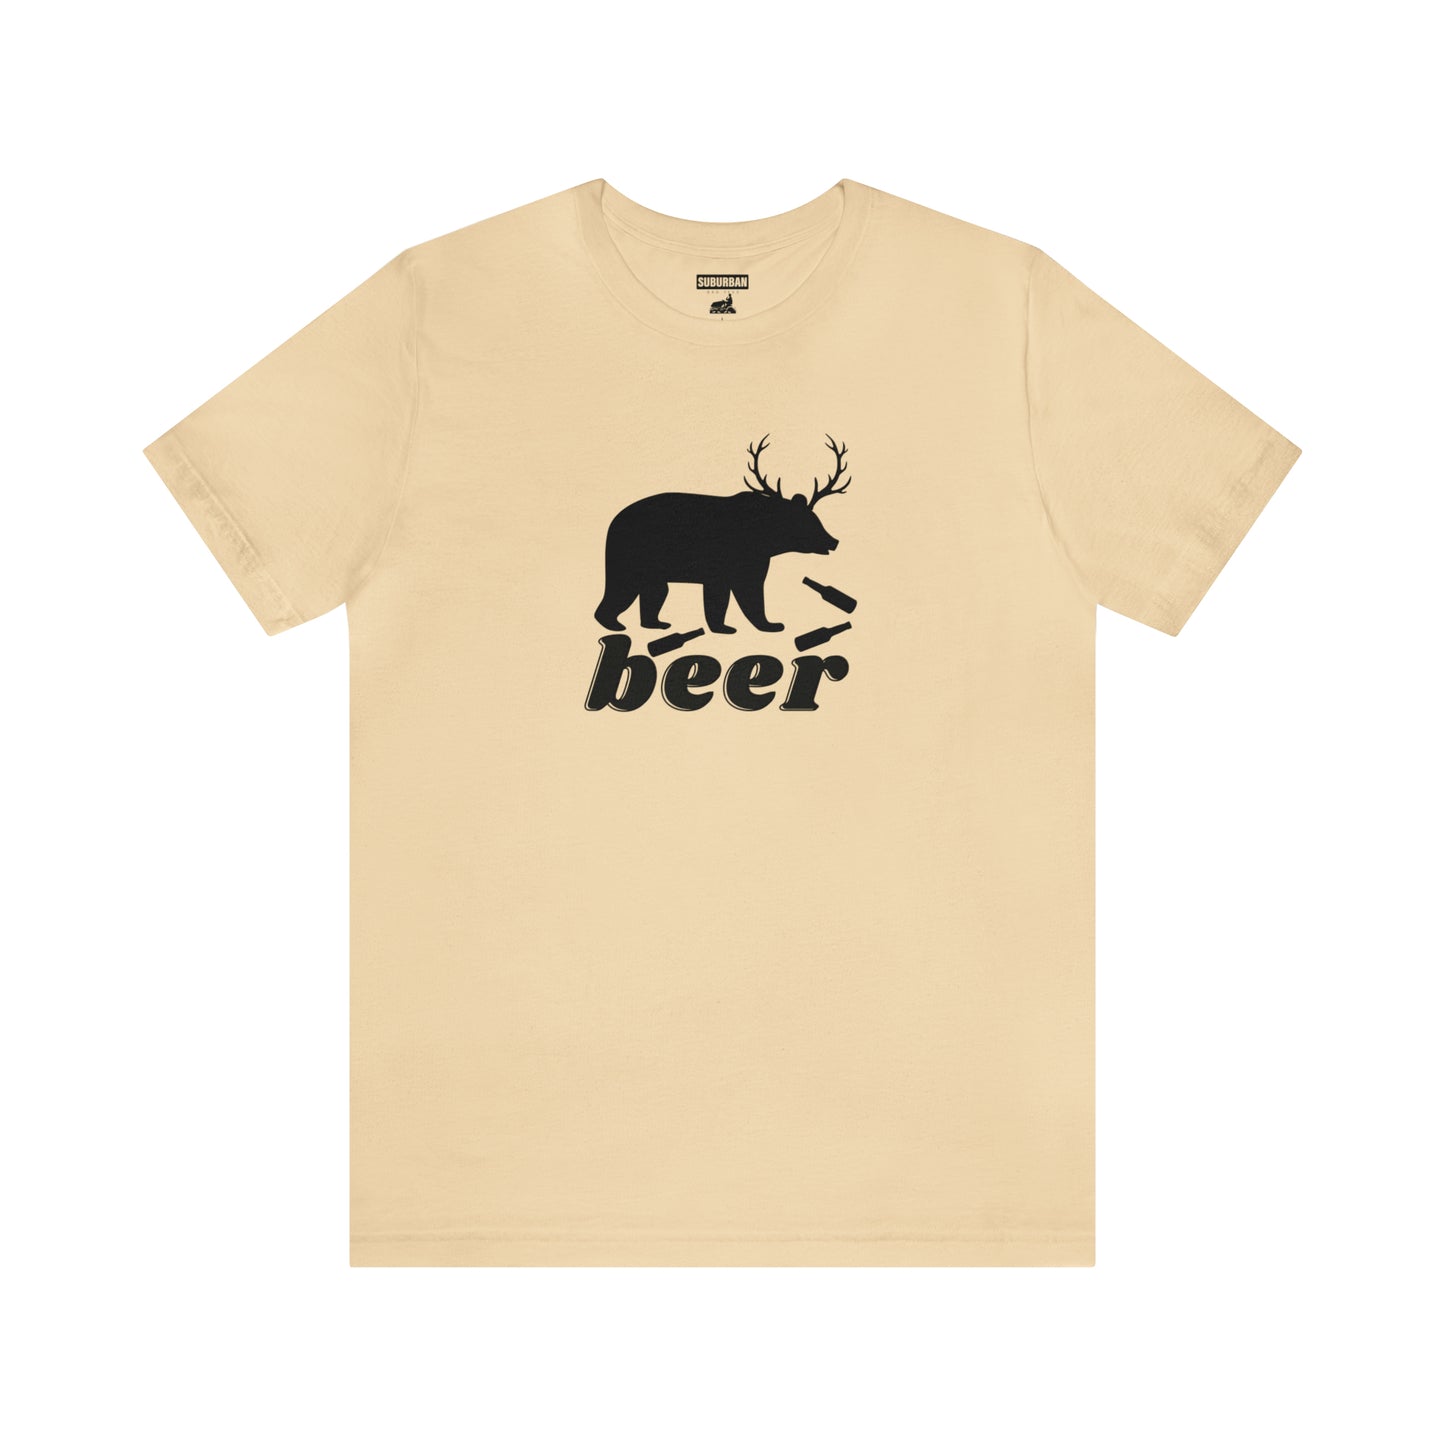 Bear + Deer = Beer Tee